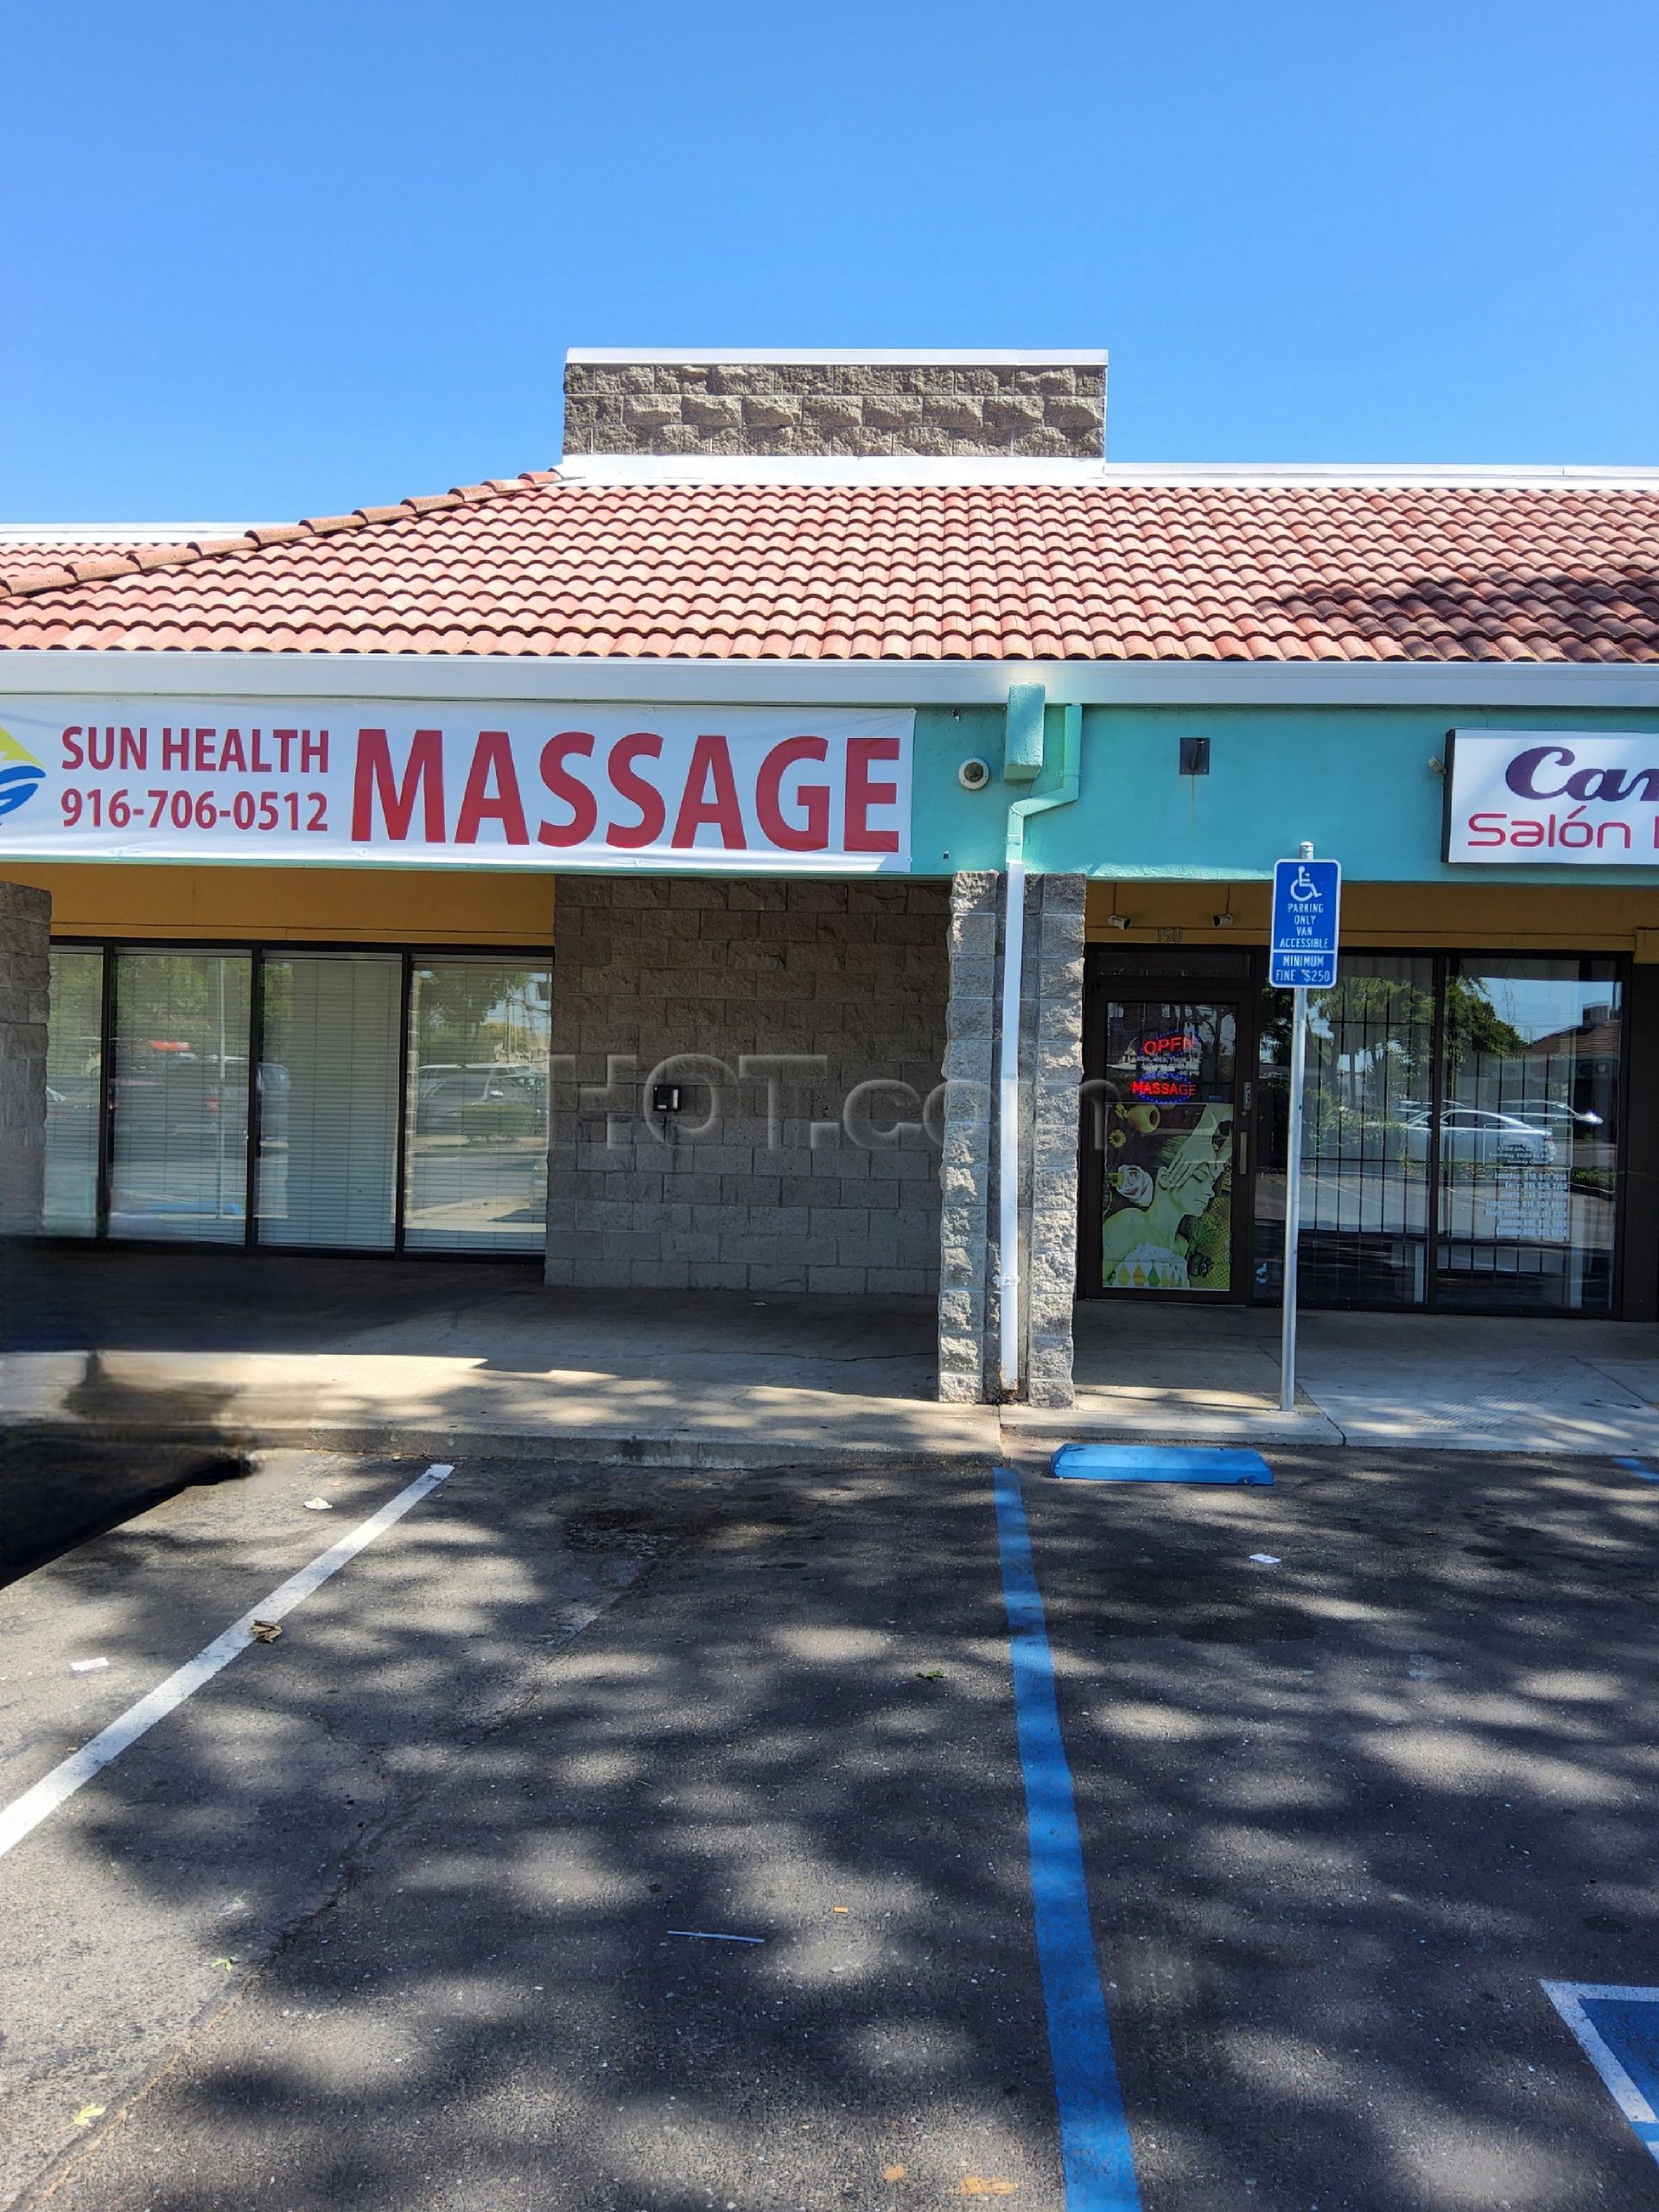 Sacramento, California Sun Health Massage